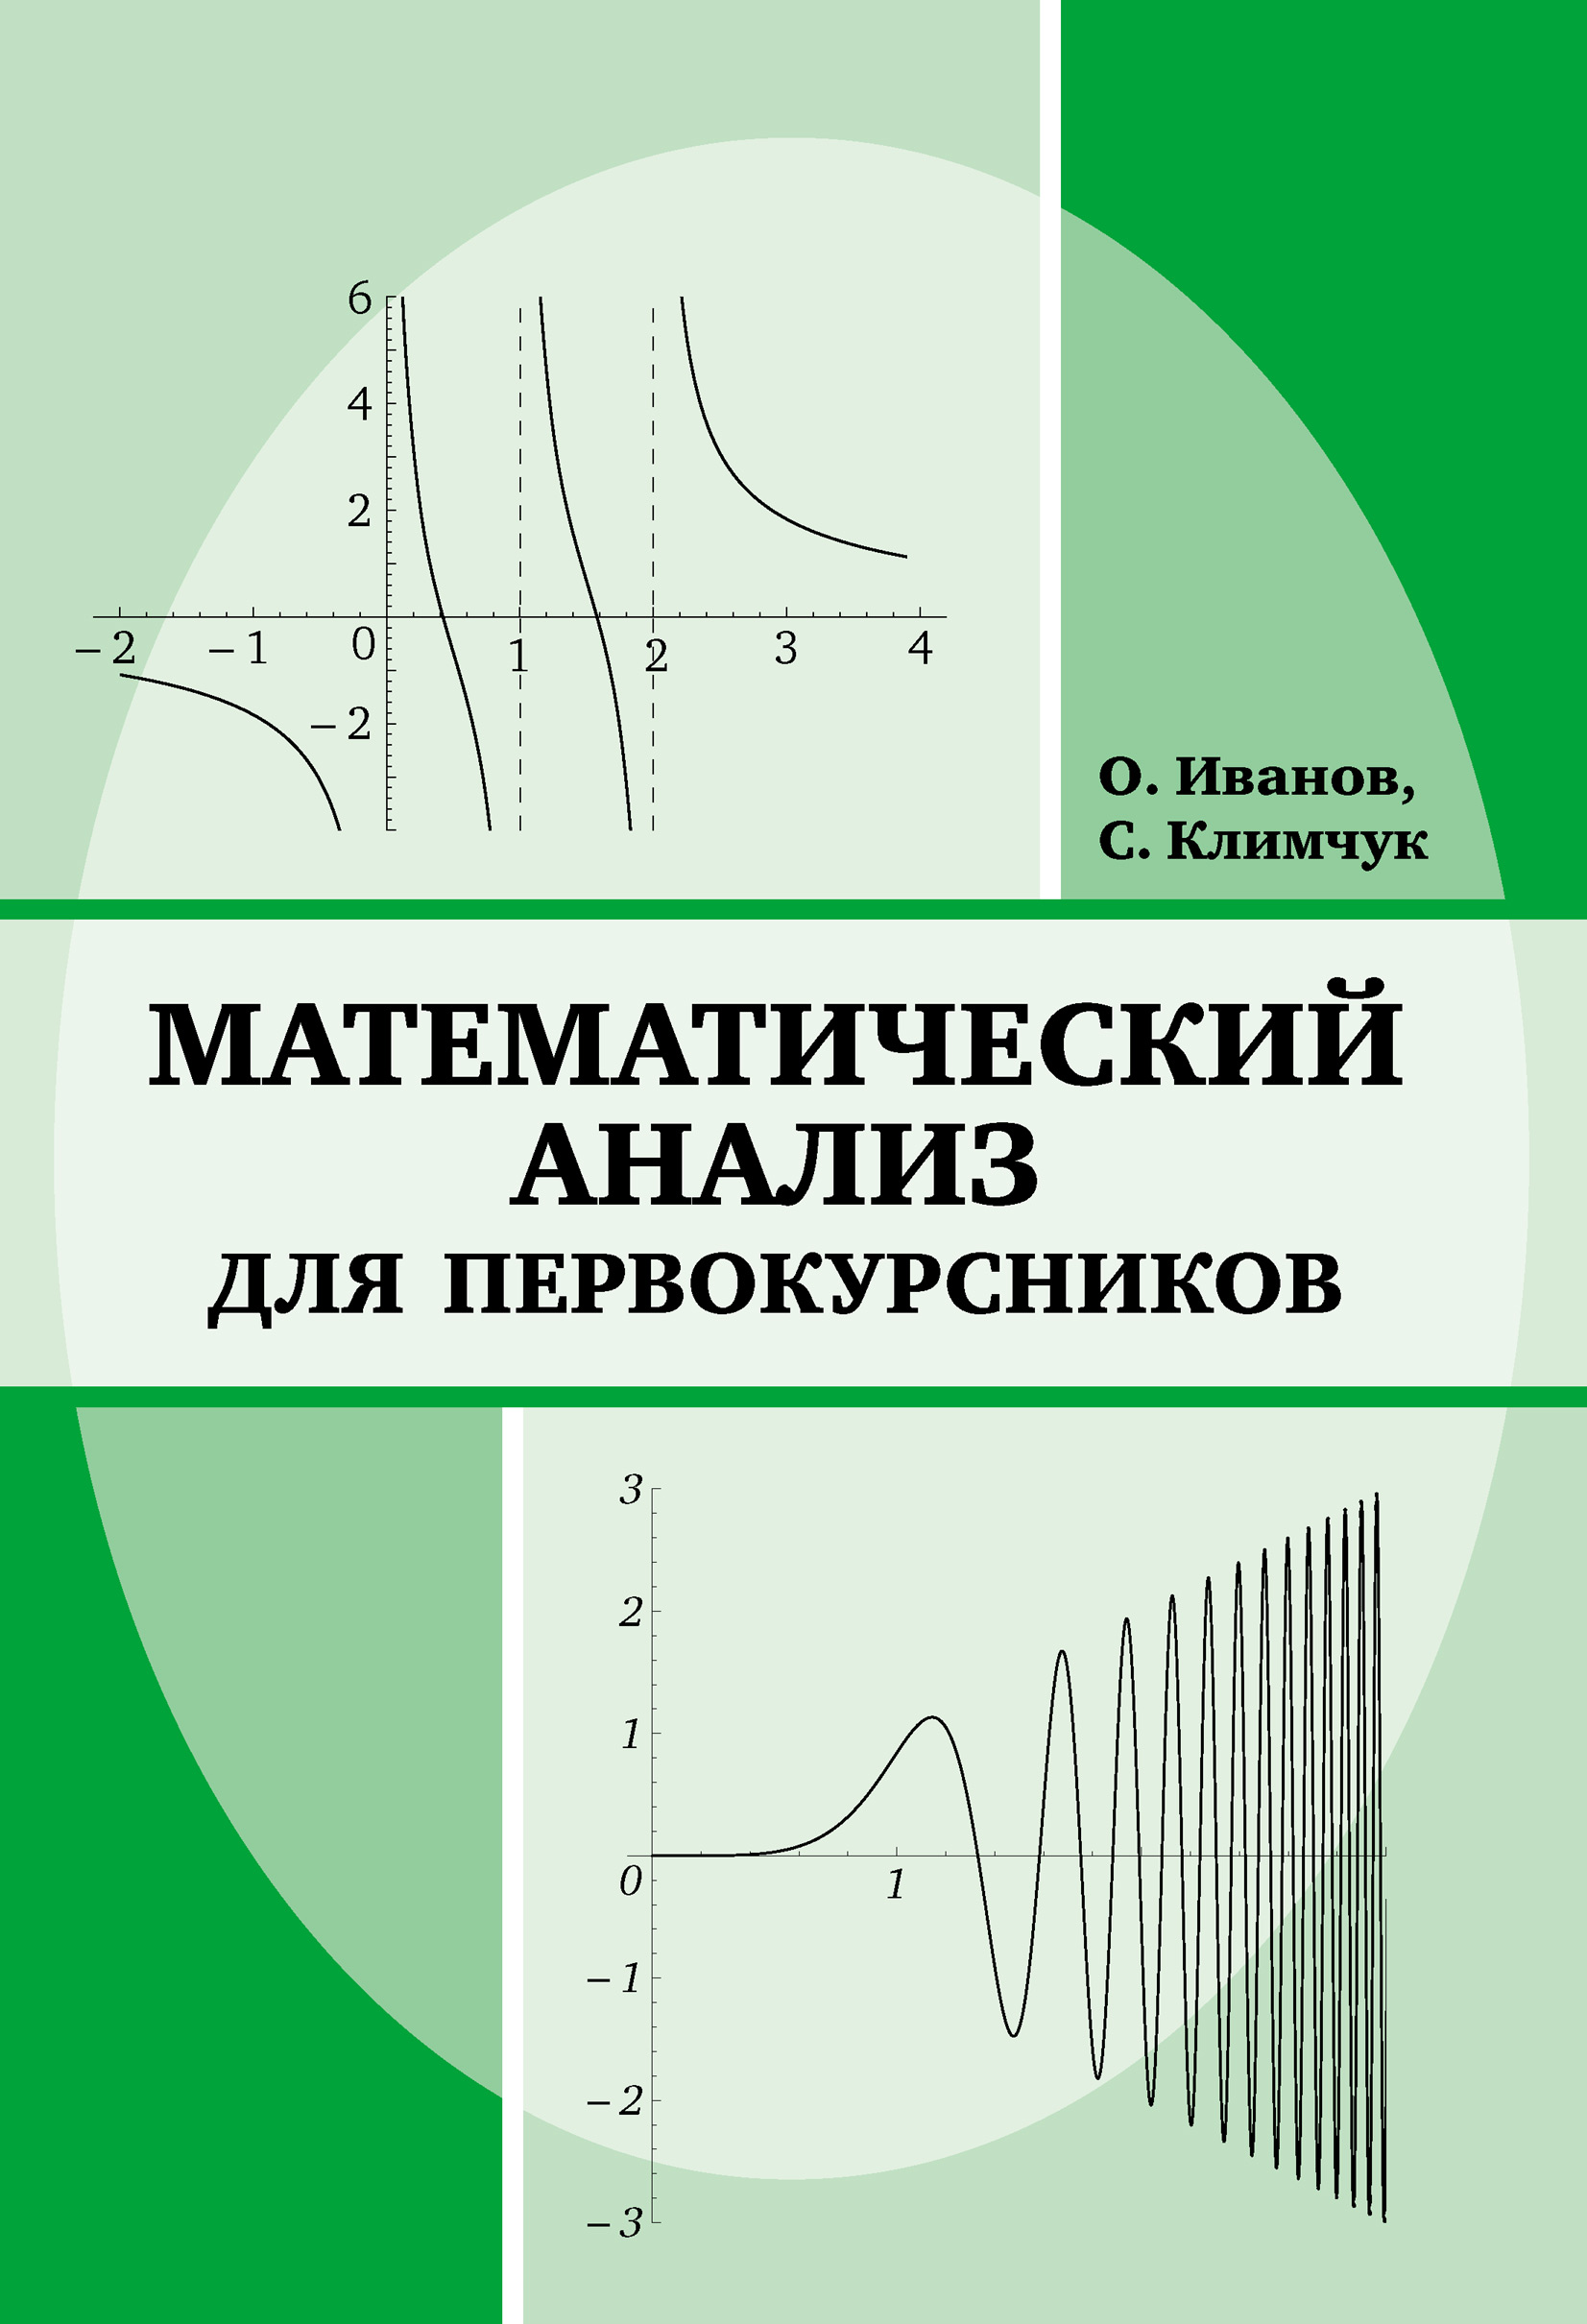 Уроки математического анализа. Математический анализ. Мат анализ. Математический анализ книга. Аналитическая математика.